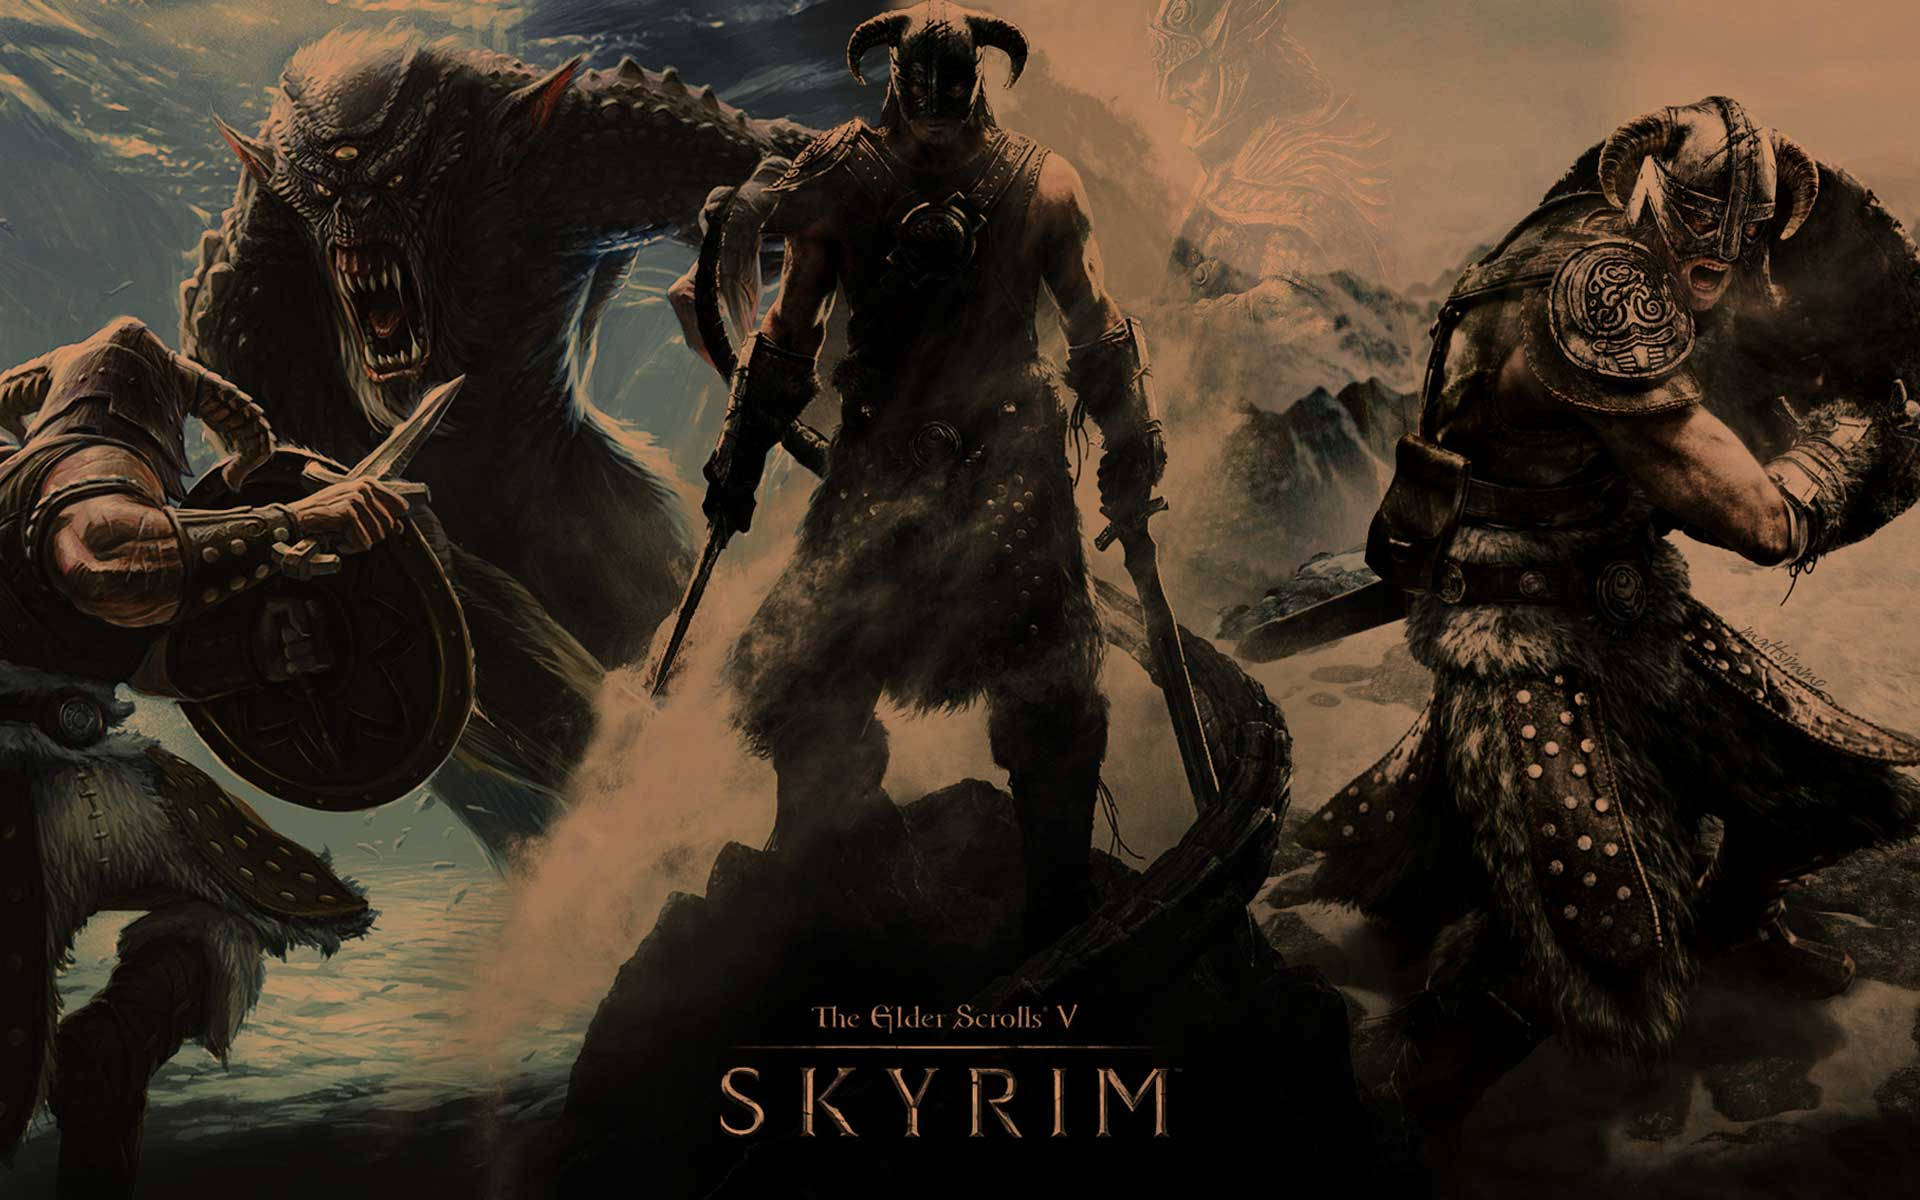 Skyrim 4k Characters Of Elder Scrolls V Wallpaper